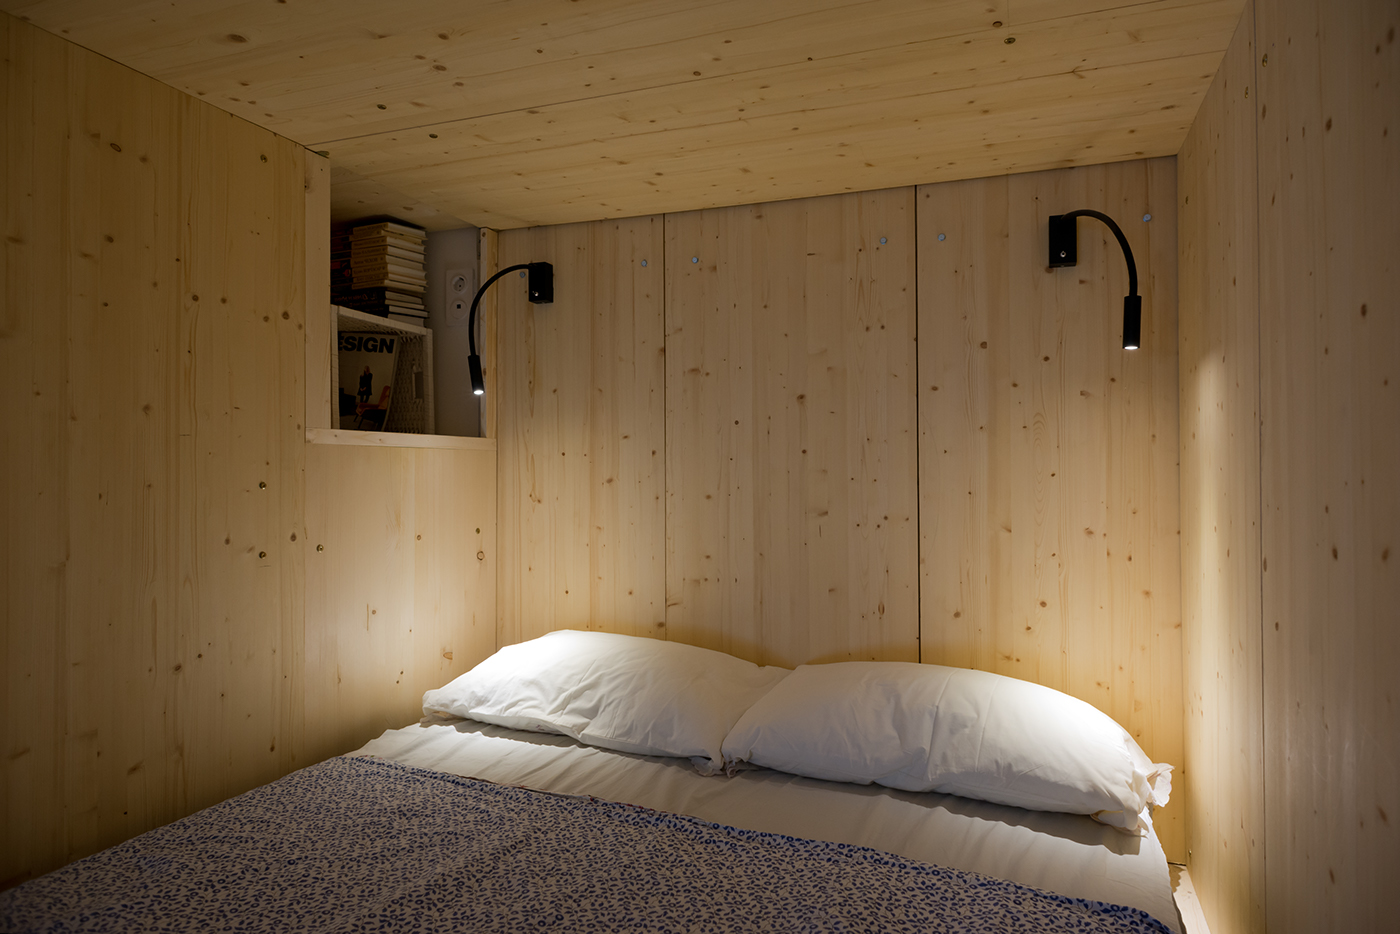 Interior Architecture architecture small flat transformer loft bed wooden sleepbox 35 square meter stair storage wood working  interior design 